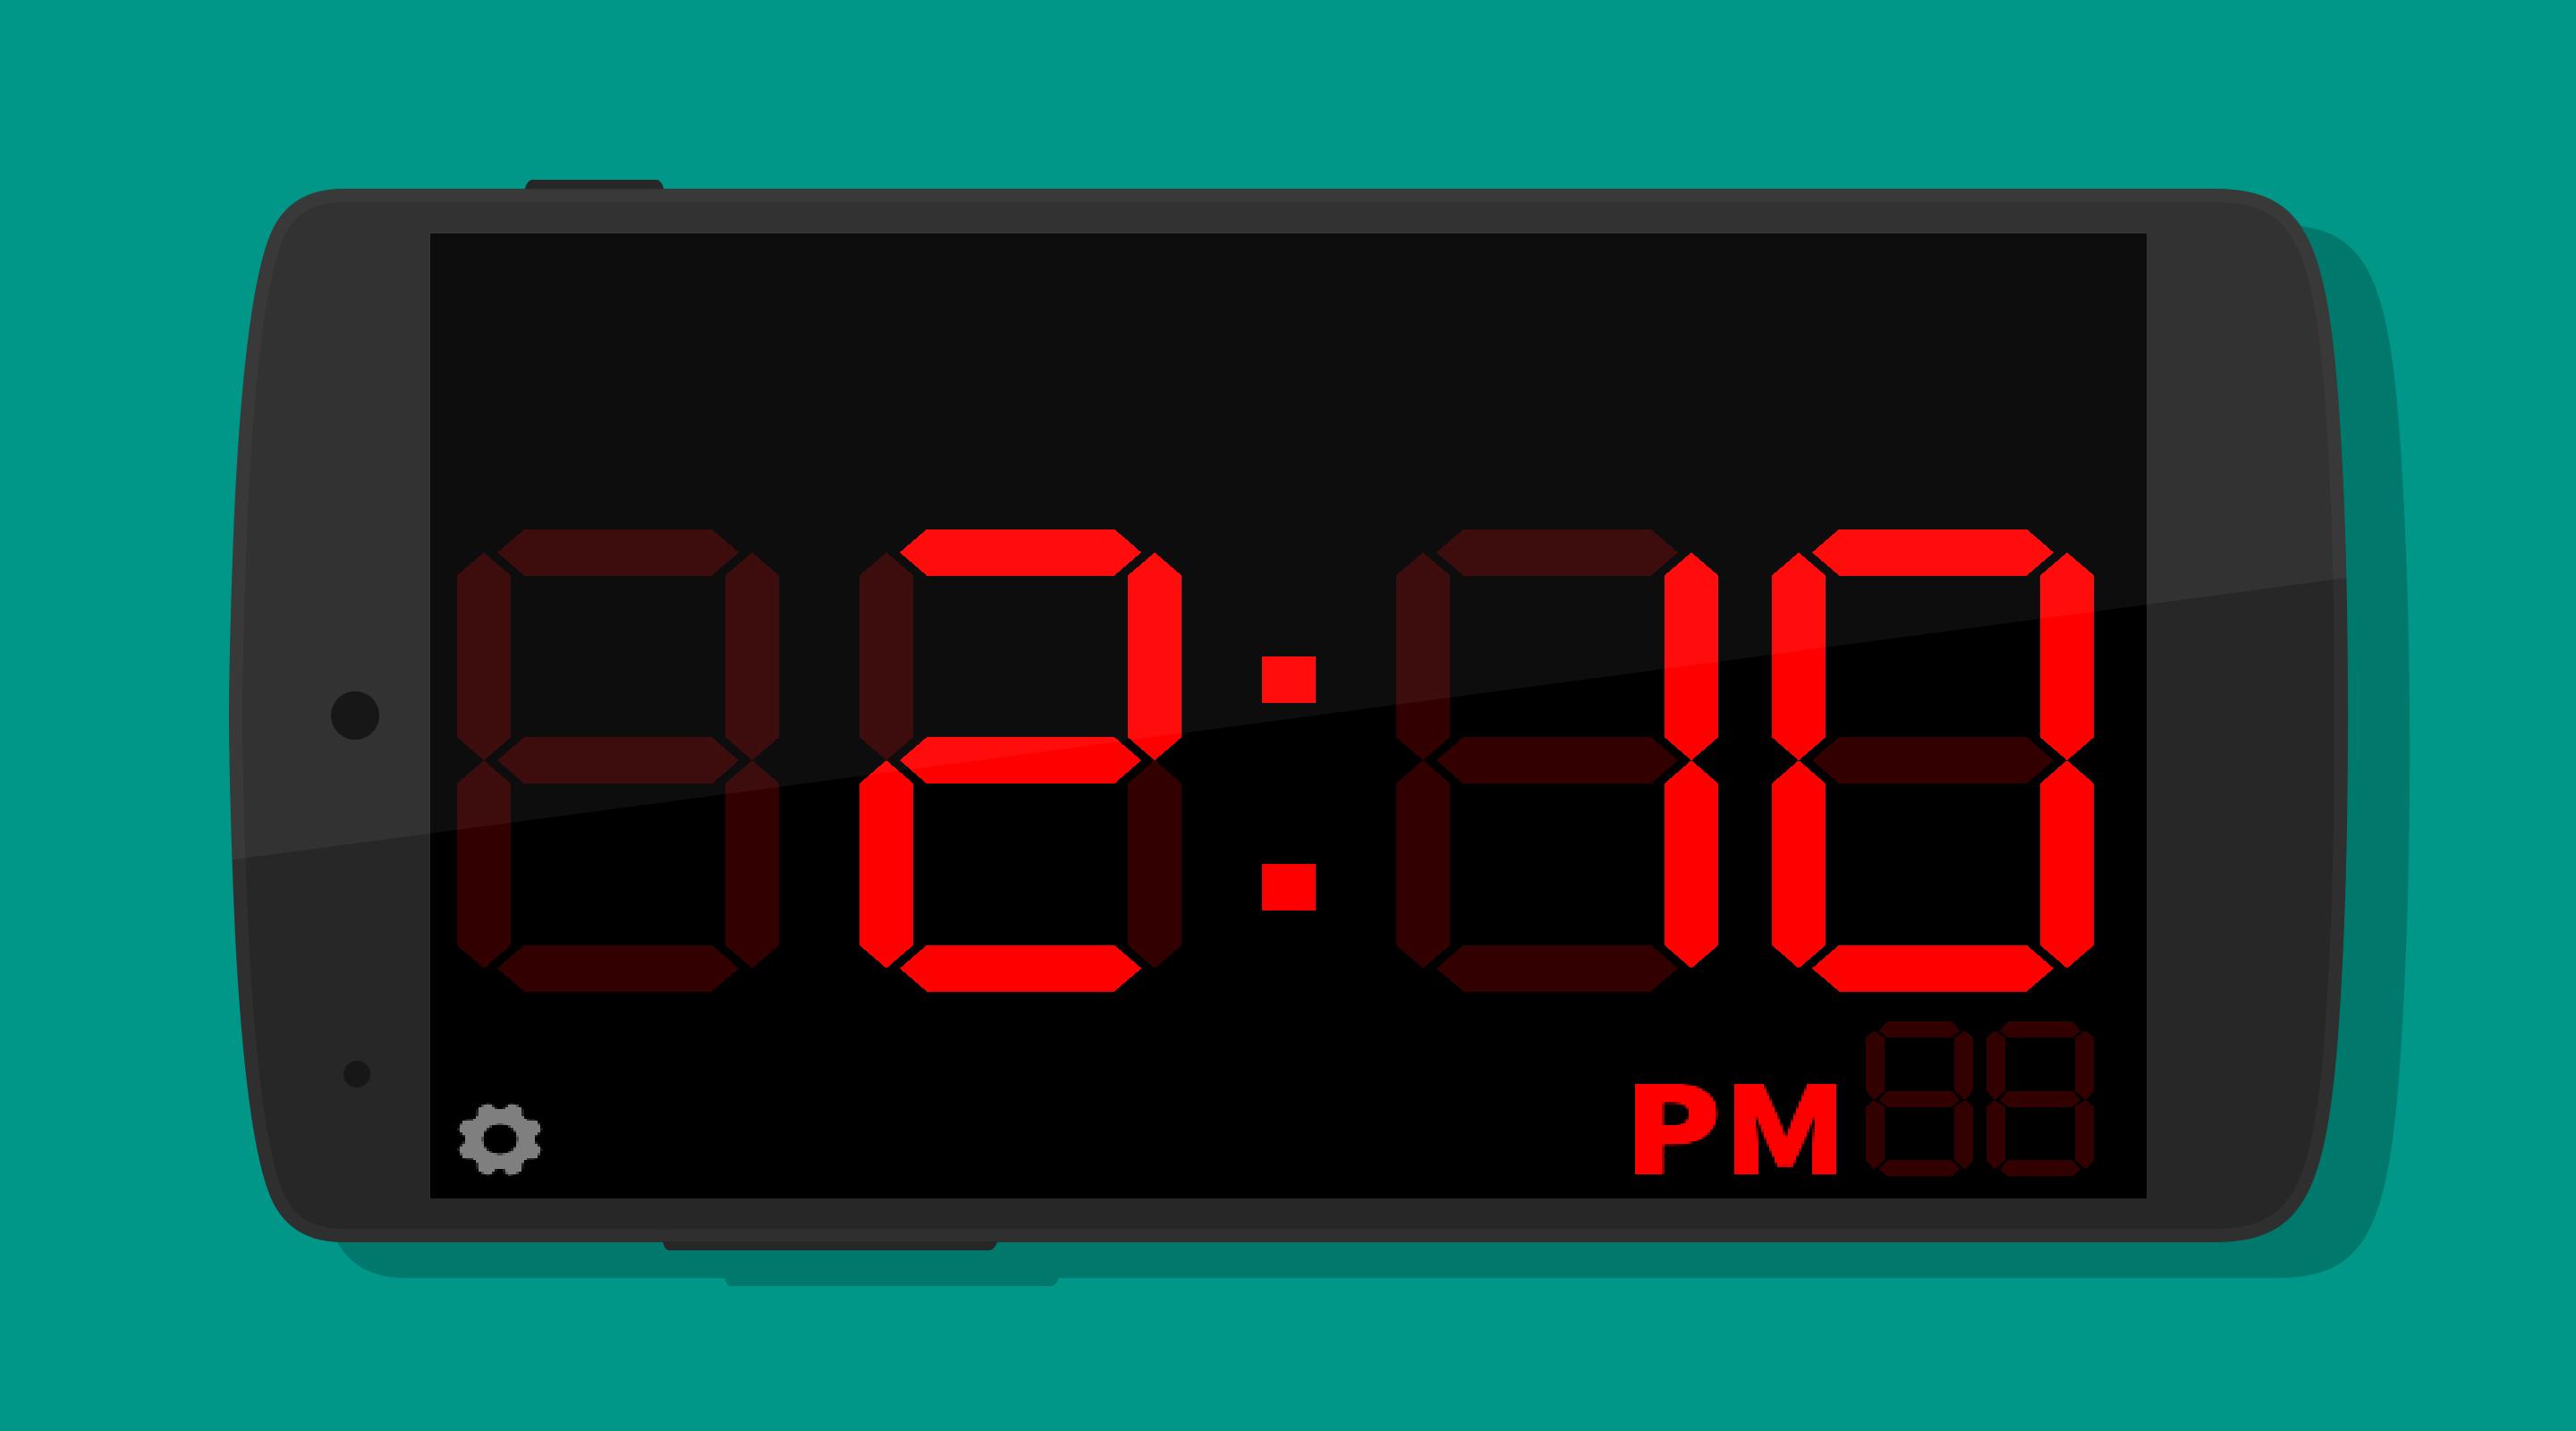 Время 14 58. Часы Digital Clock 200730138828.4. Электронные часы диджитал клок 1018. Циферблат электронных часов. Электронные часы 10:00.